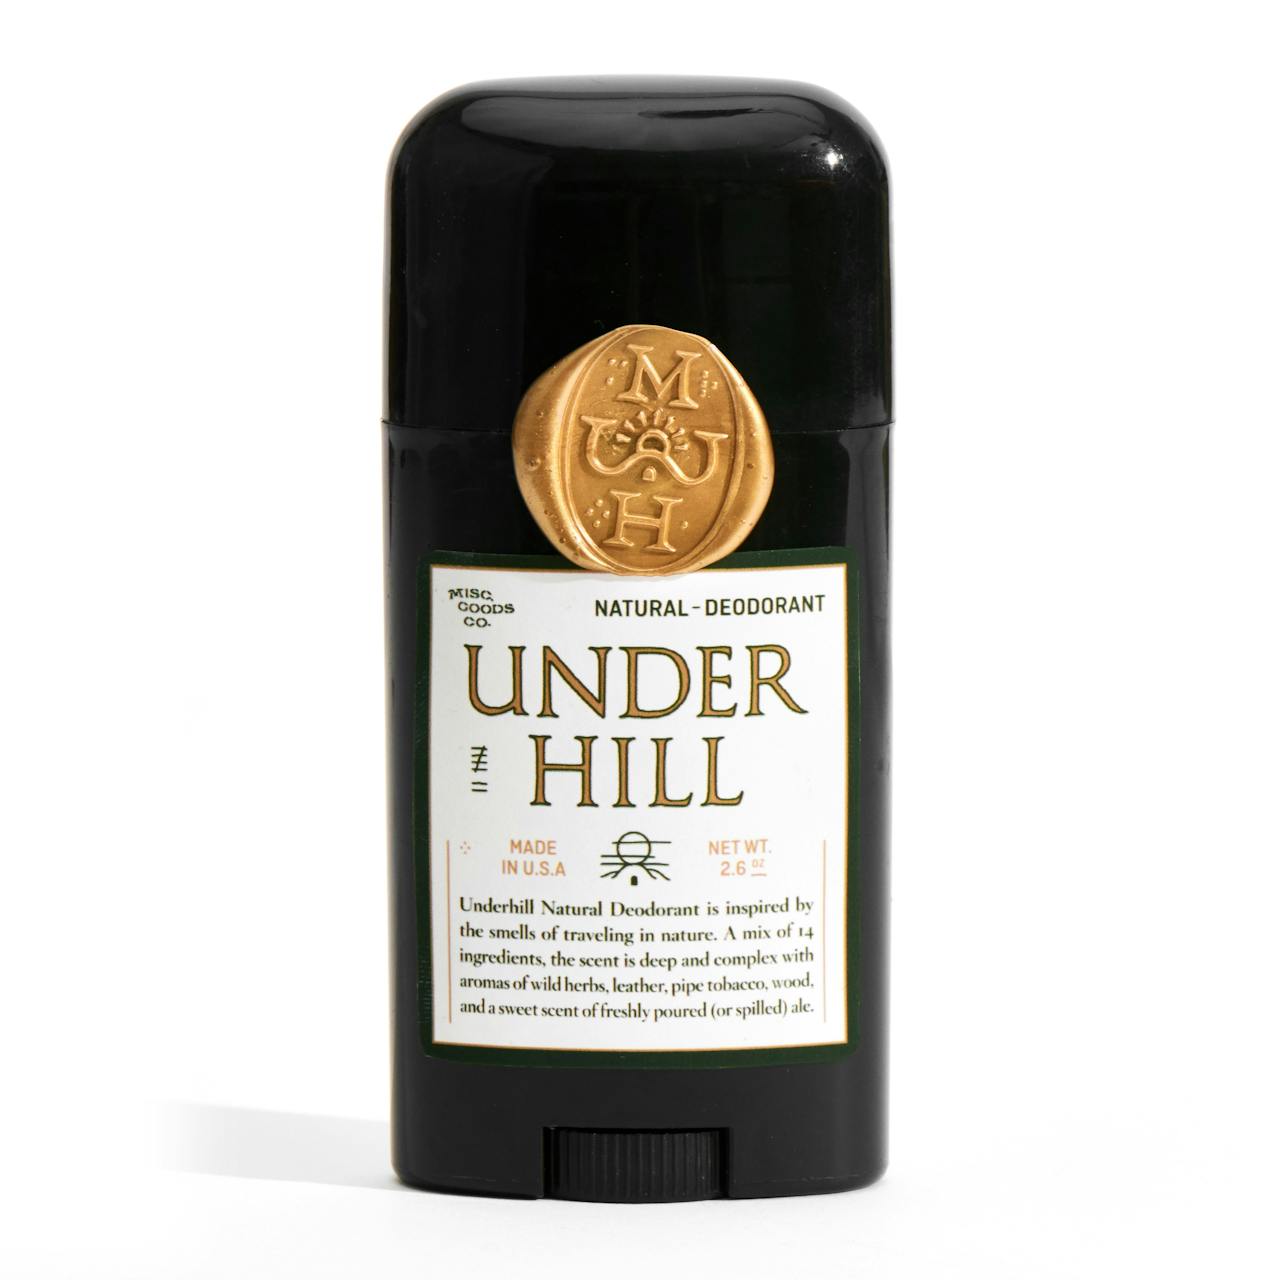 Misc. Goods Co. Underhill Natural Deodorant